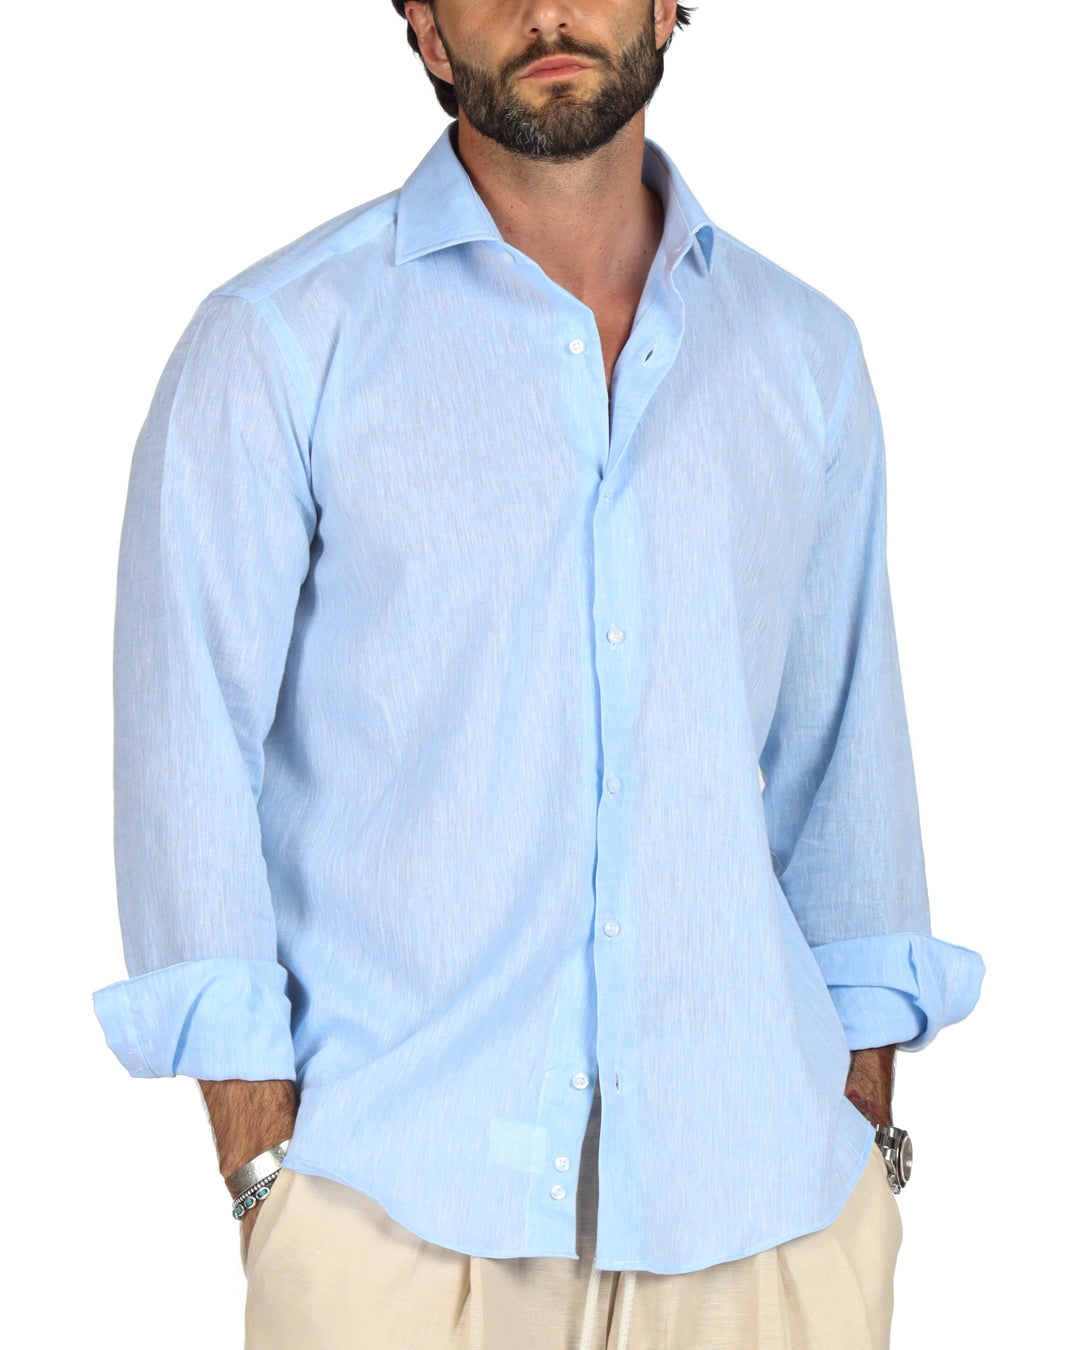 Praiano - Camicia classica azzurra in lino